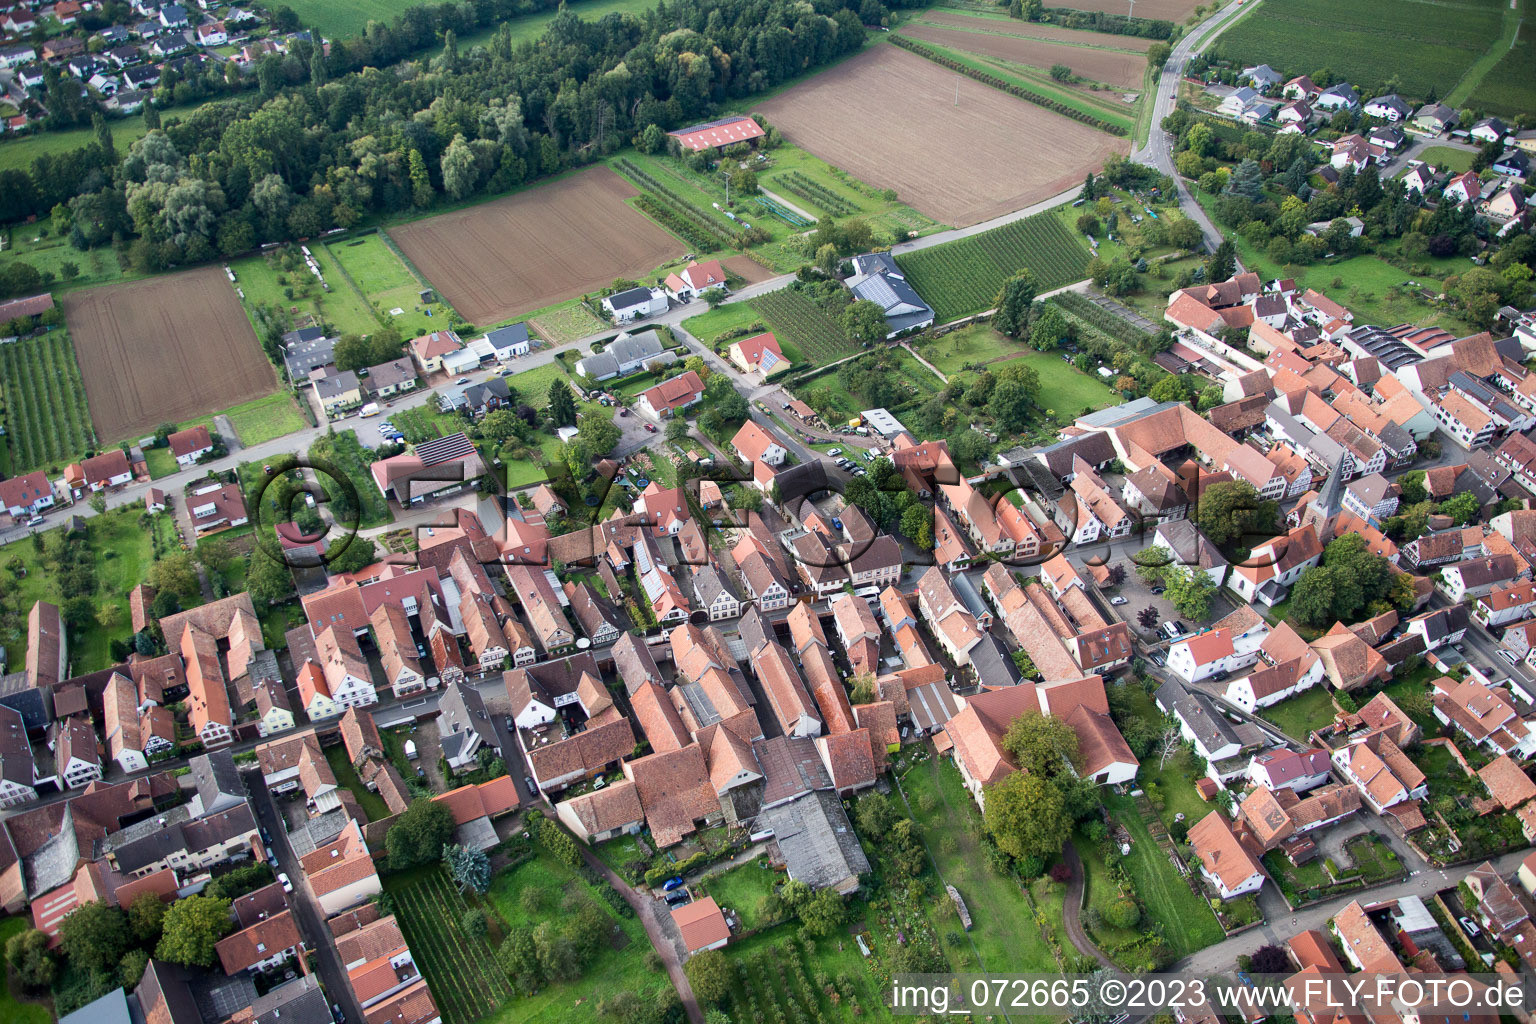 Drone recording of District Heuchelheim in Heuchelheim-Klingen in the state Rhineland-Palatinate, Germany